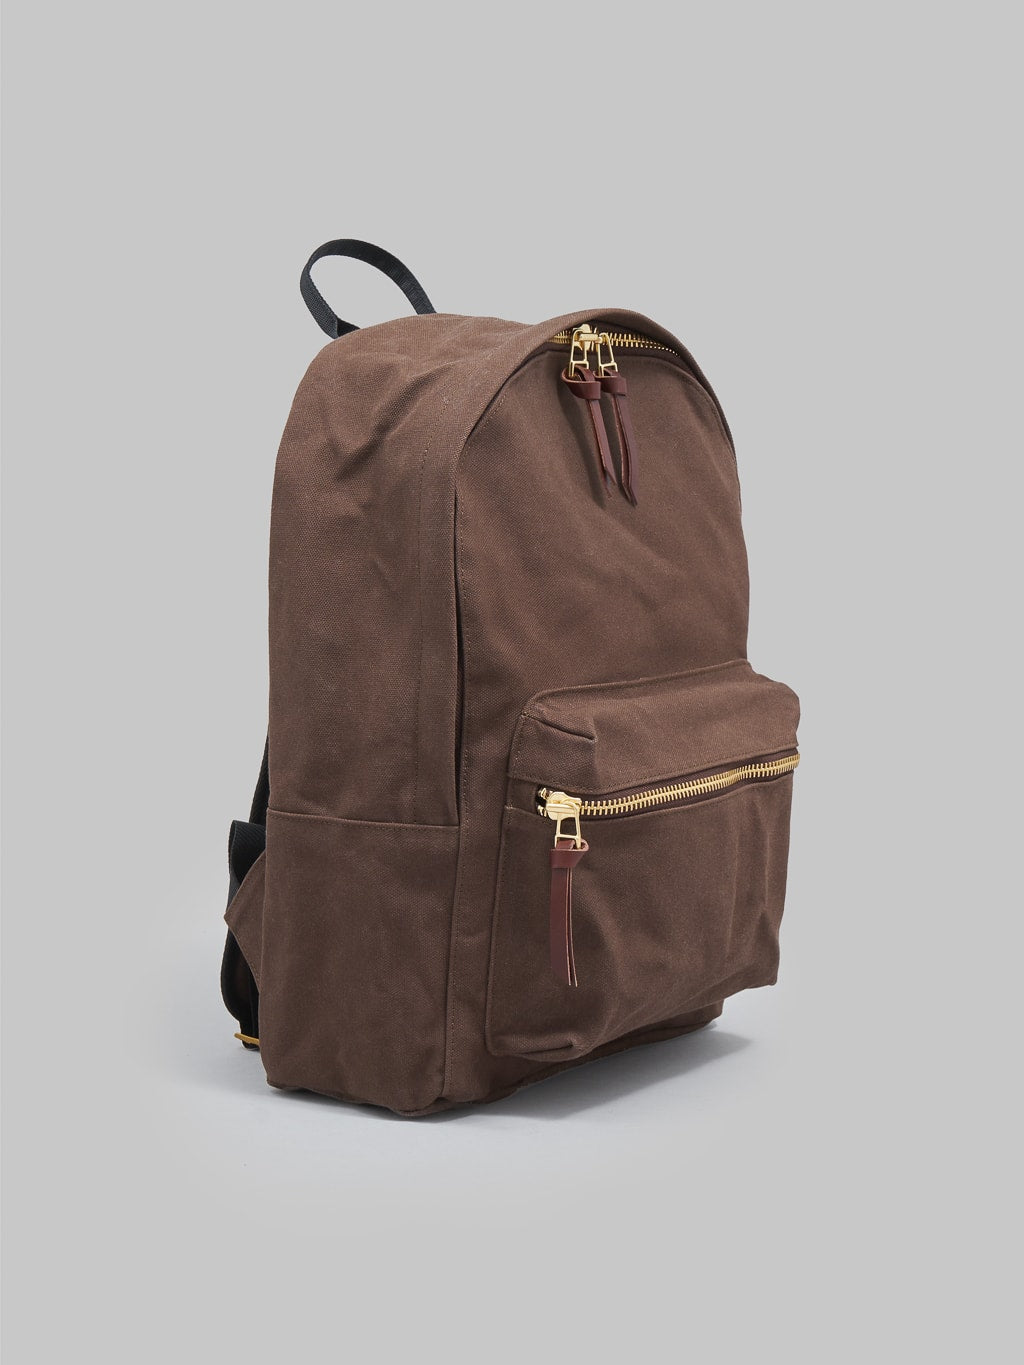 Kobashi Studio Standard Backpack Brown side look